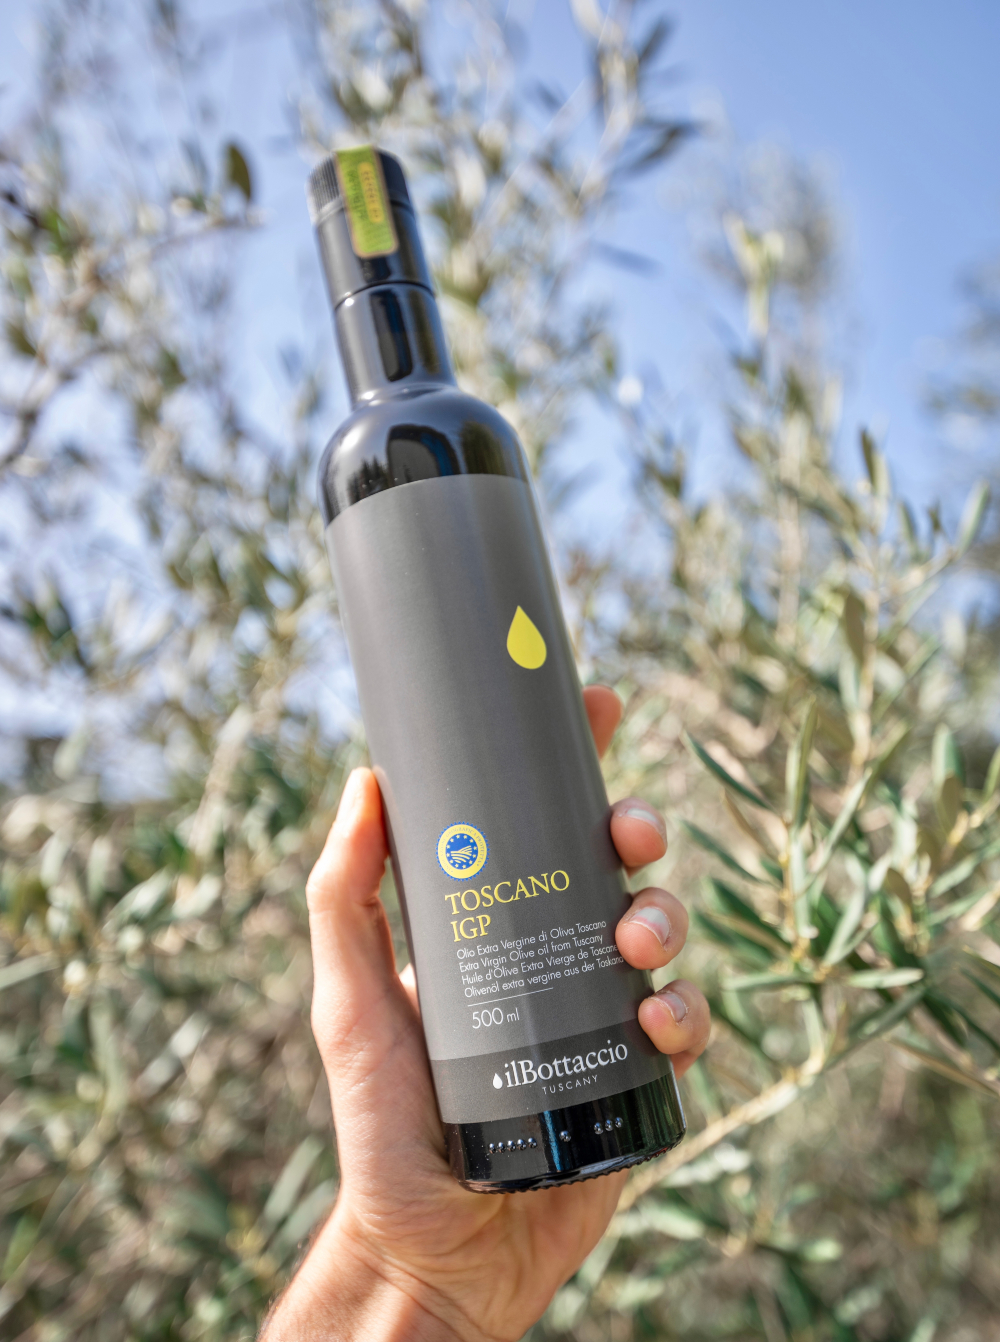 Une main qui tient une bouteille d'huile d'olive extra vierge Il Bottacio